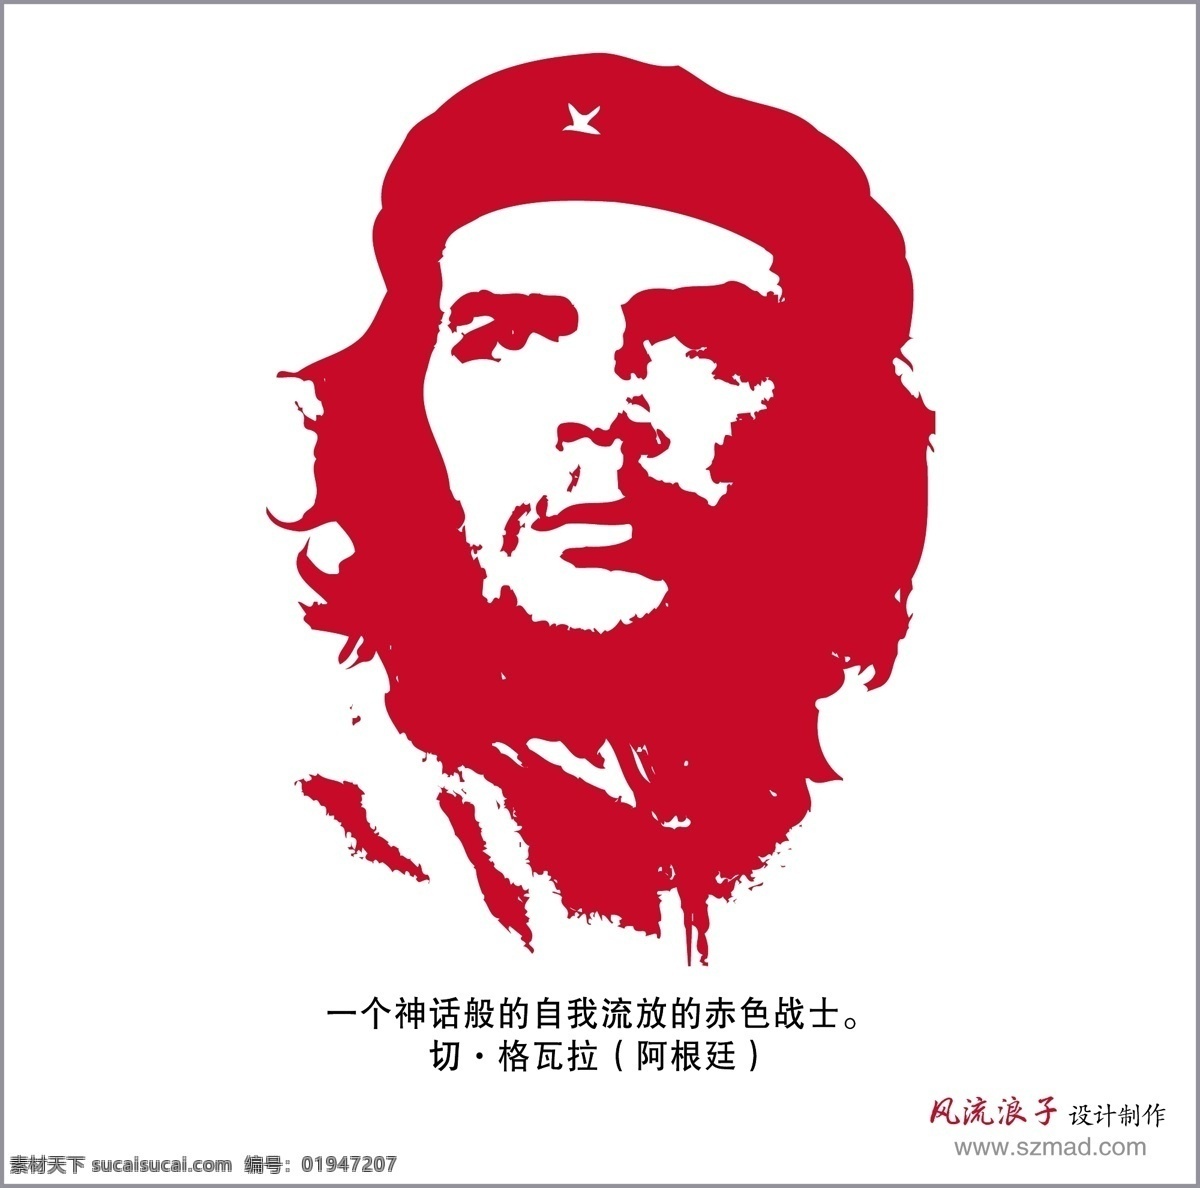 南美洲 毛泽东 切 格瓦拉 游击队 古巴英雄 共产主义战士 矢量人物 明星偶像 矢量图库